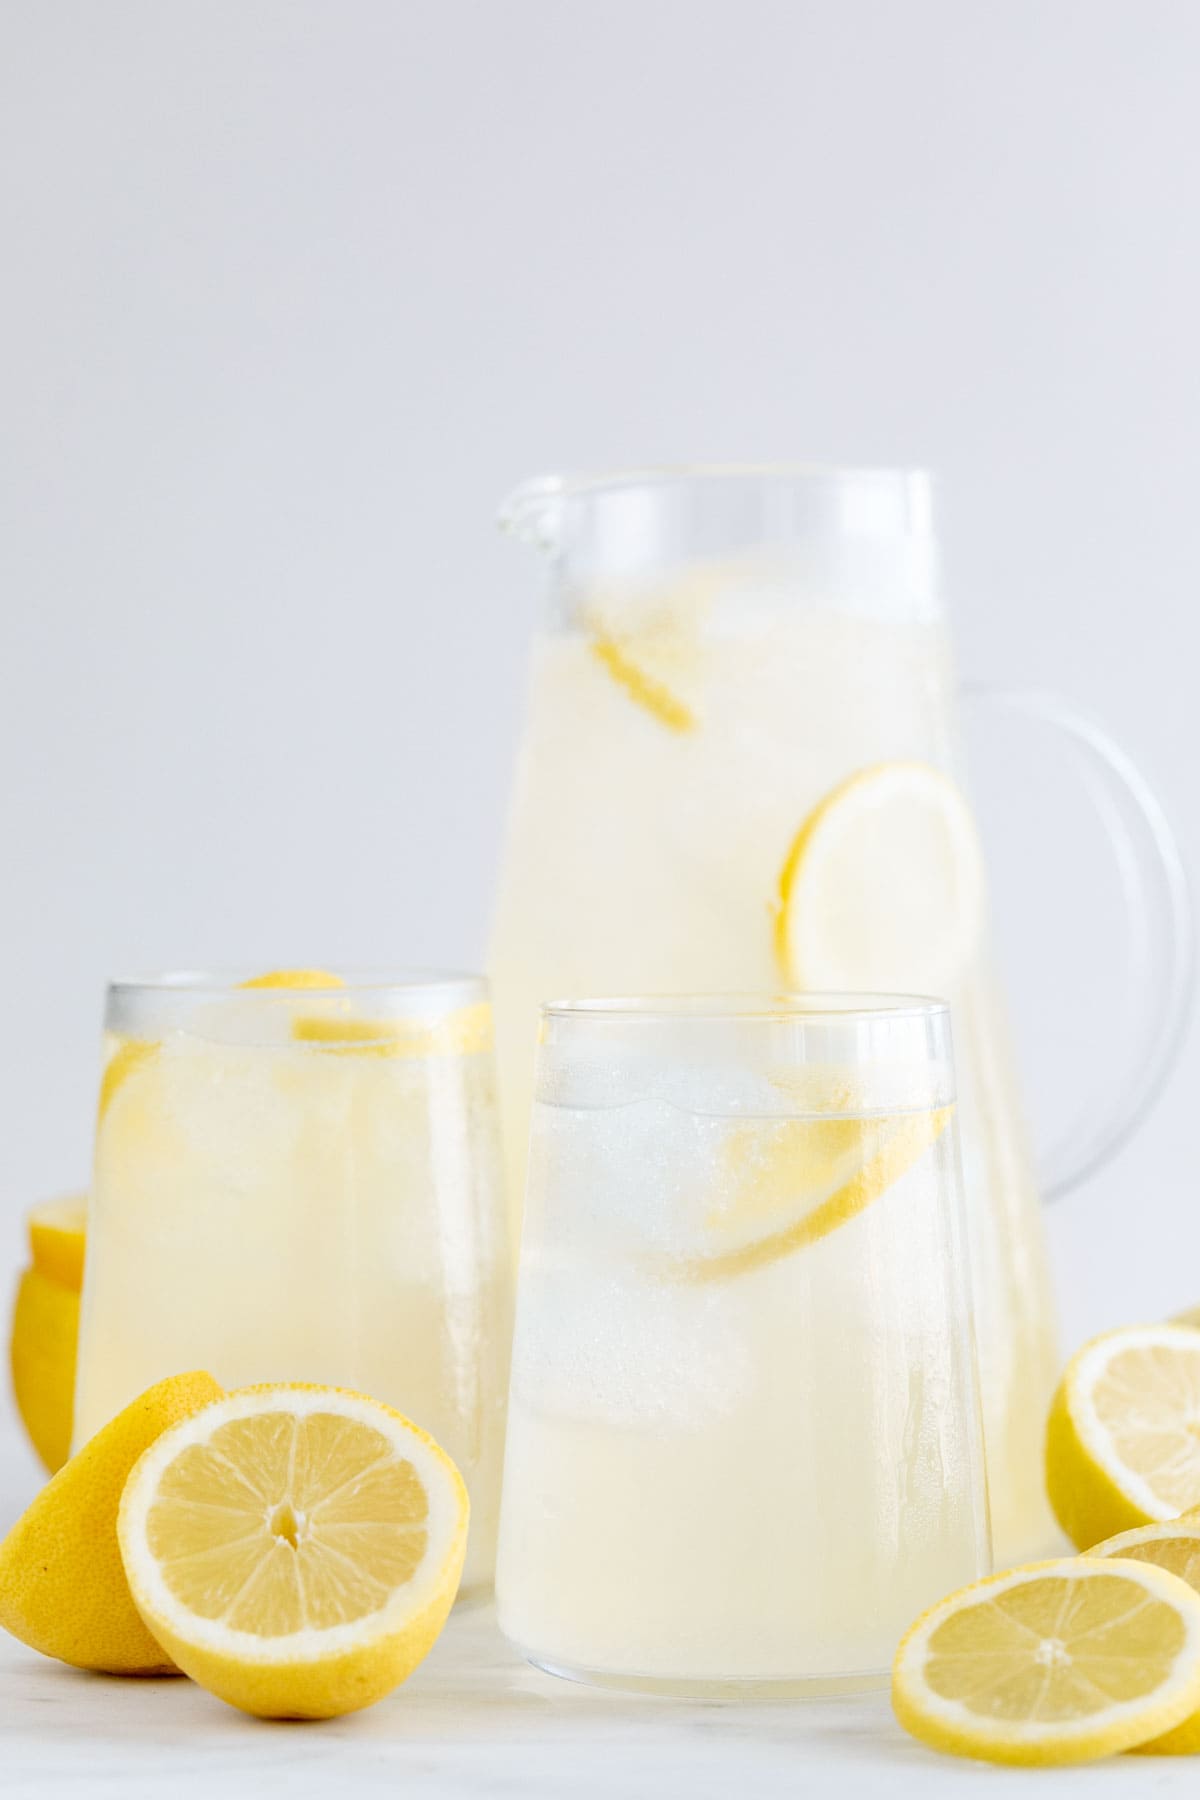 Jarra y vasos con limonada casera y limones alrededor.